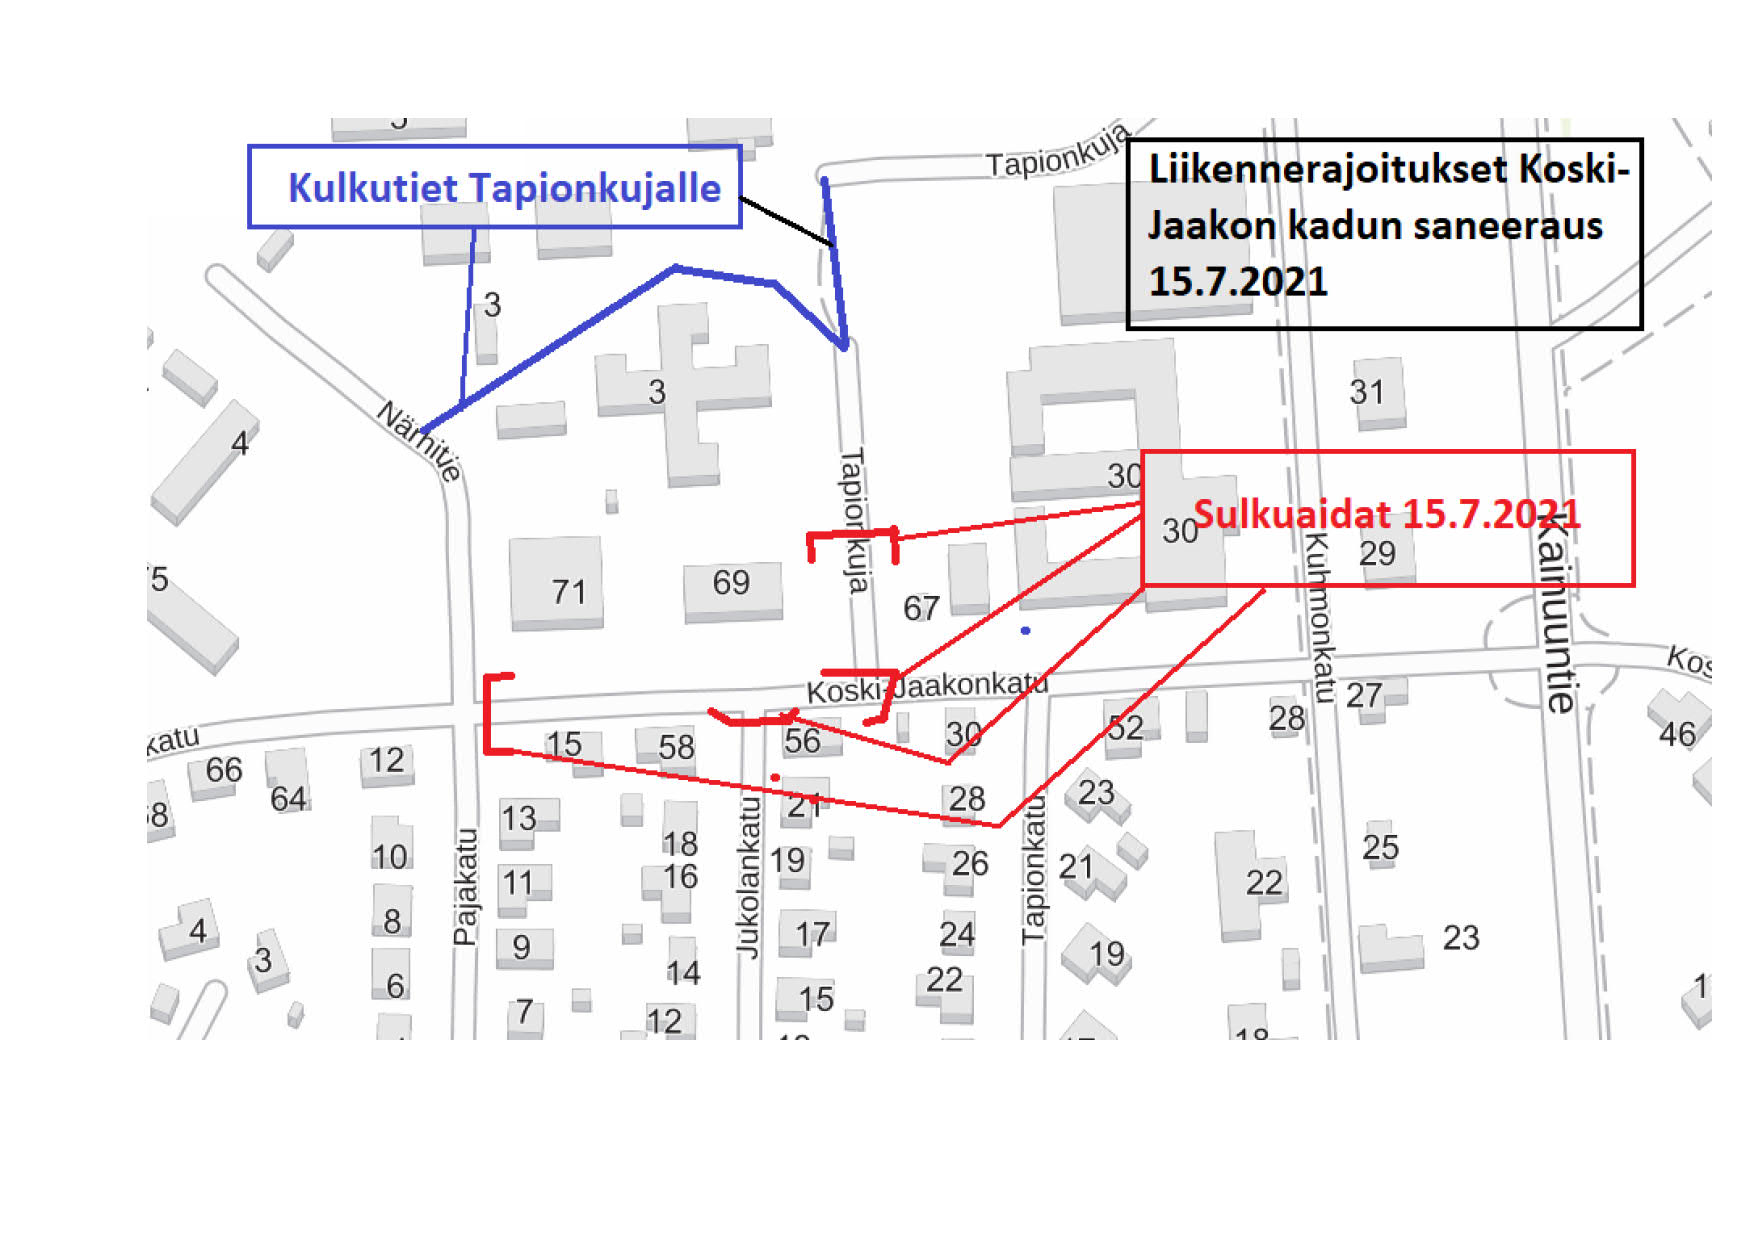 Havainnekartta liikennerajoituksista Koski-Jaakon kadun peruskorjaustyömaalla 15.7.2021 alkaen. Kulku Tapionkujalle ohjataan kiertotietä. 